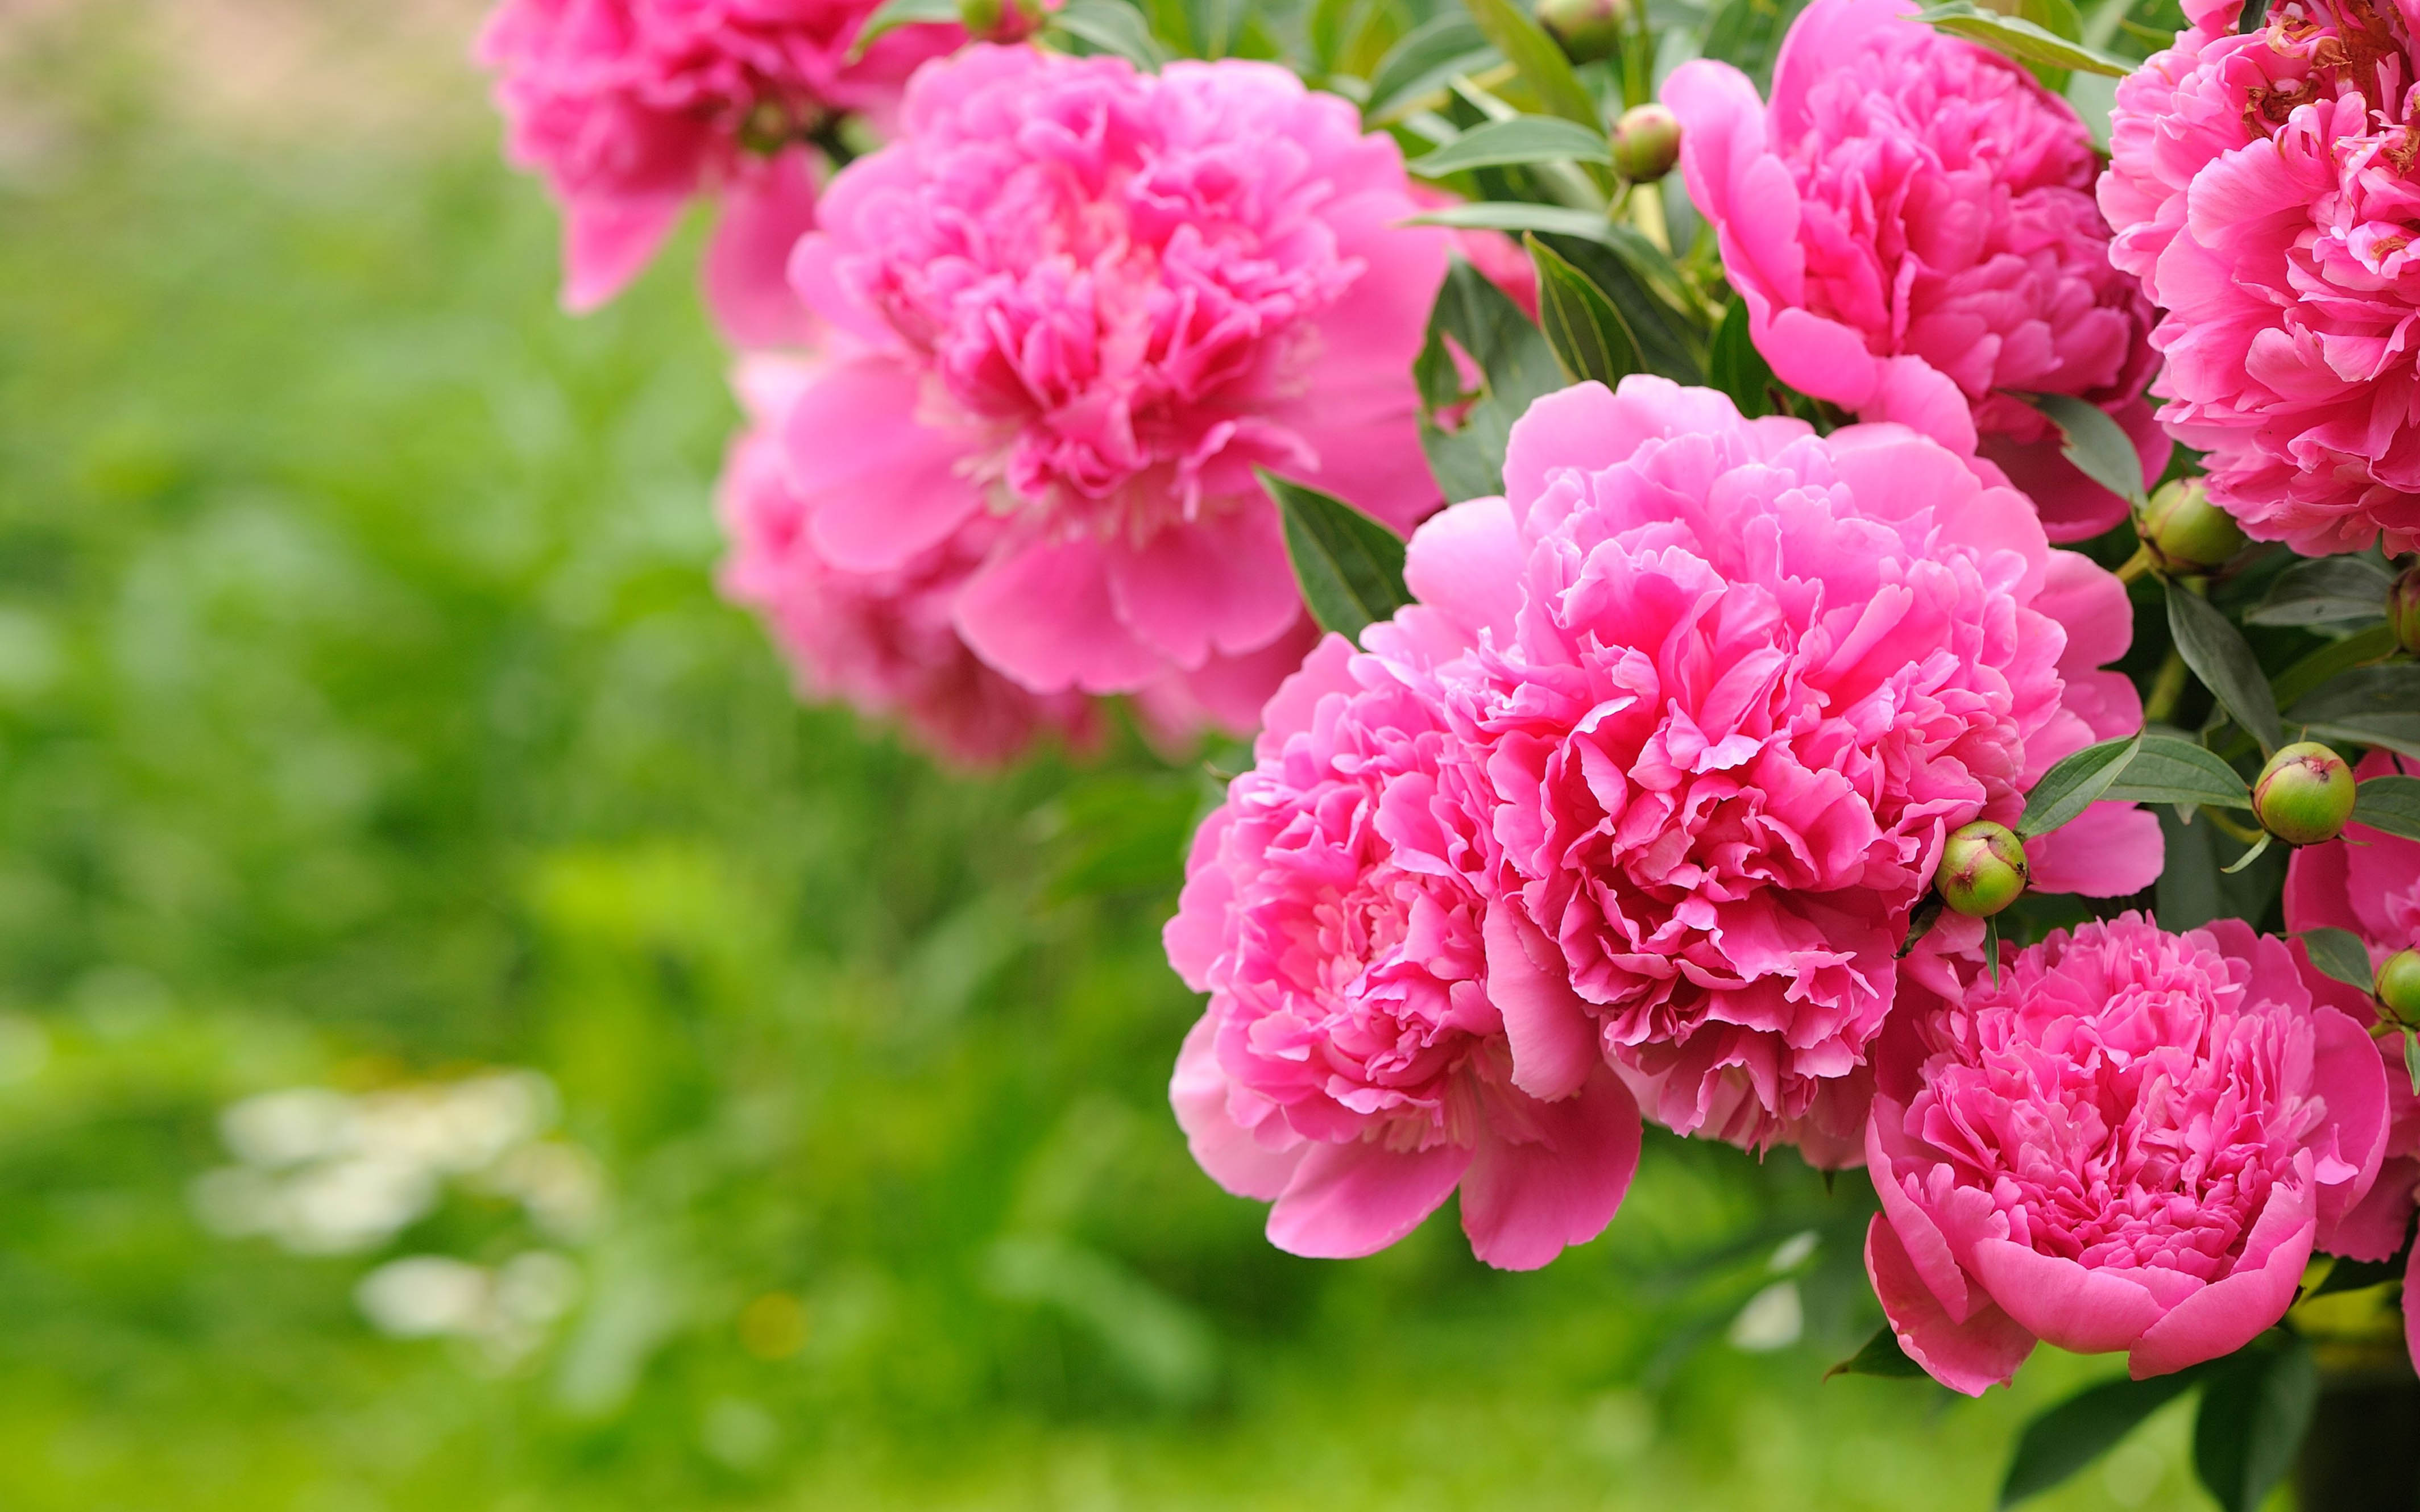 Flowering Plants Peonies Pink Flowers Bulbs Green Background Floral